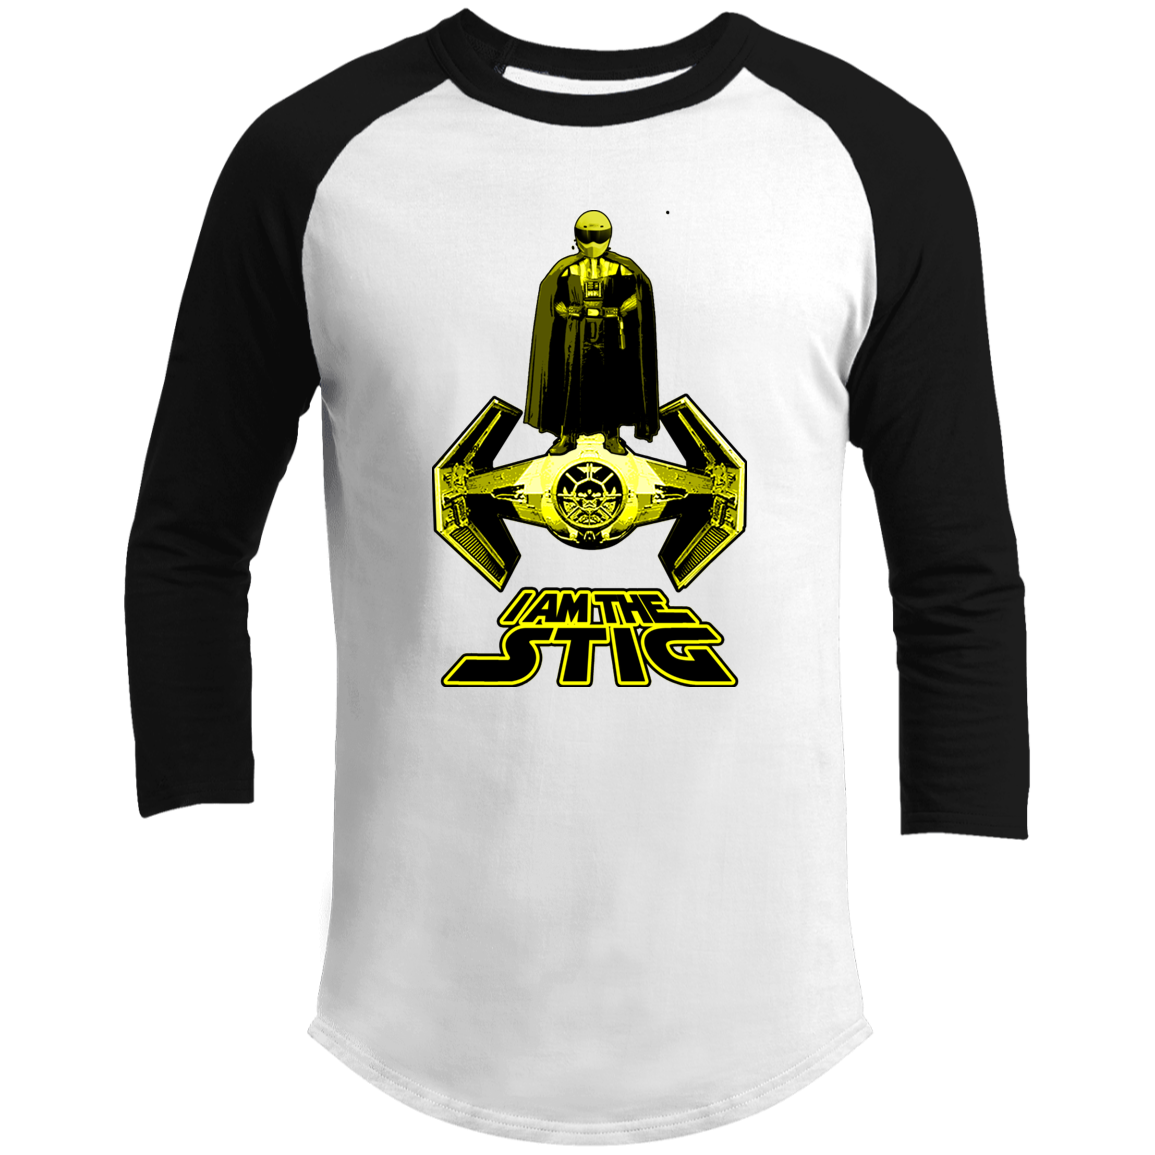 ArtichokeUSA Custom Design. I am the Stig. Vader/ The Stig Fan Art. Men's 3/4 Raglan Sleeve Shirt